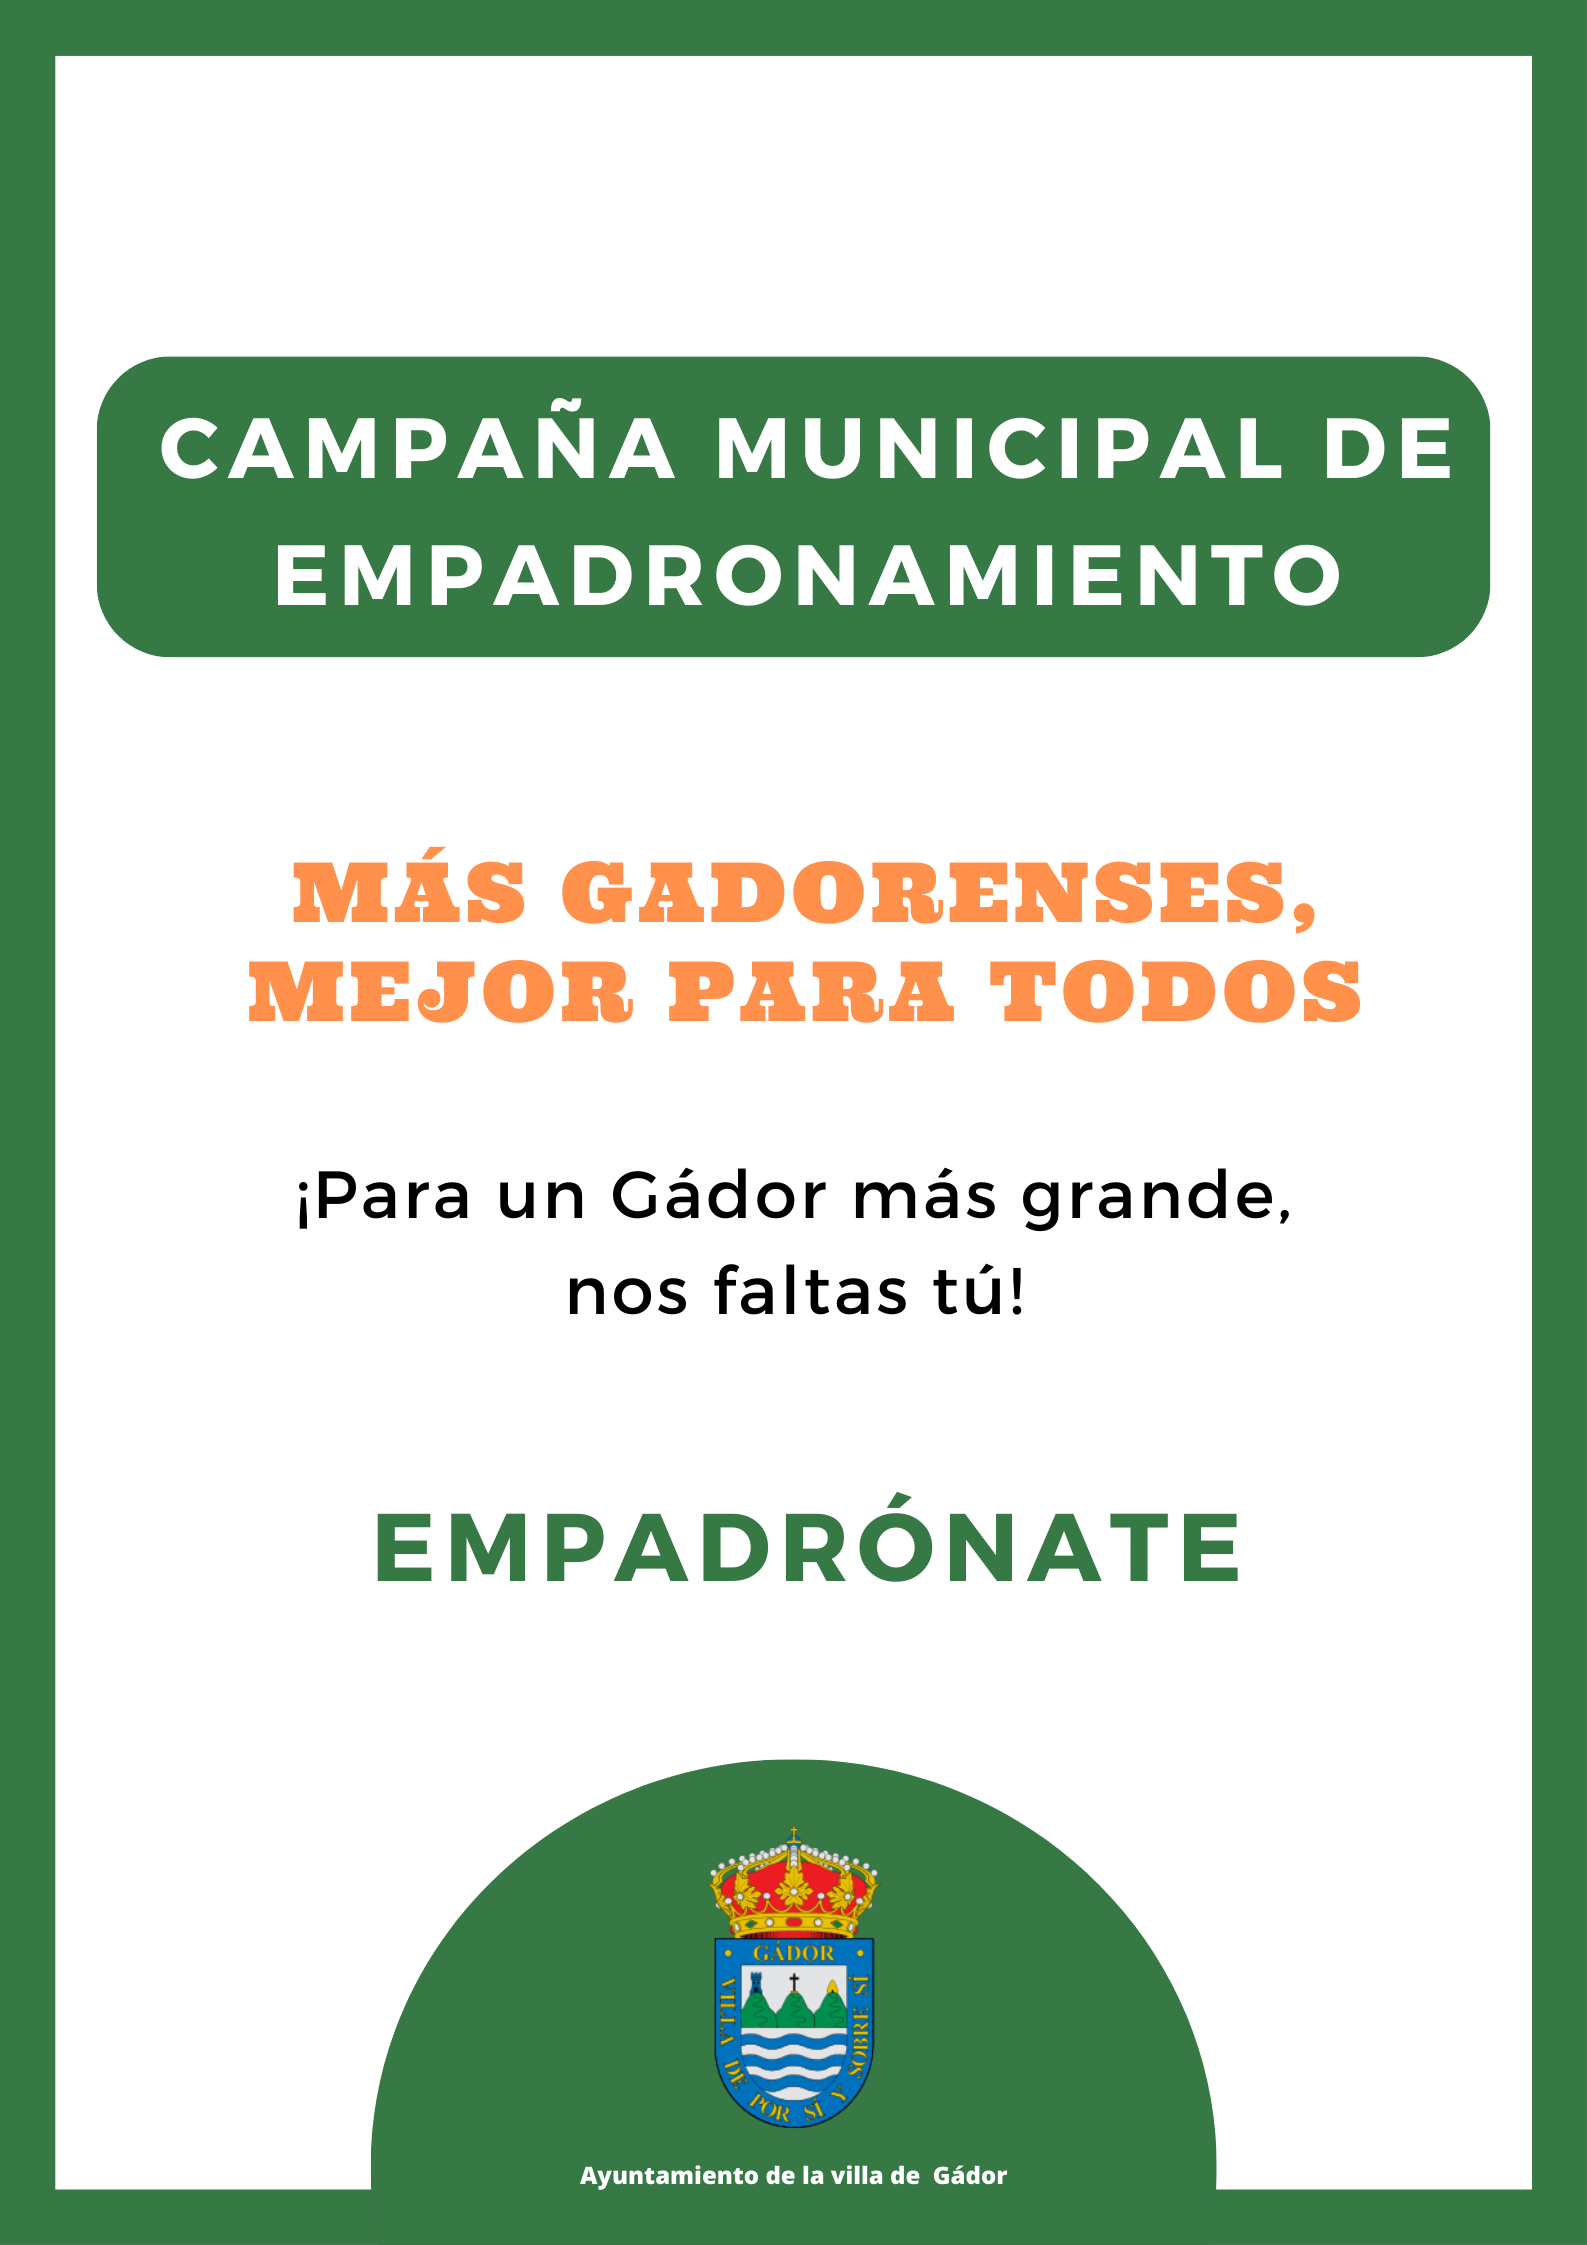 Campaña Municipal de Empadronamiento, en la Villa de Gádor